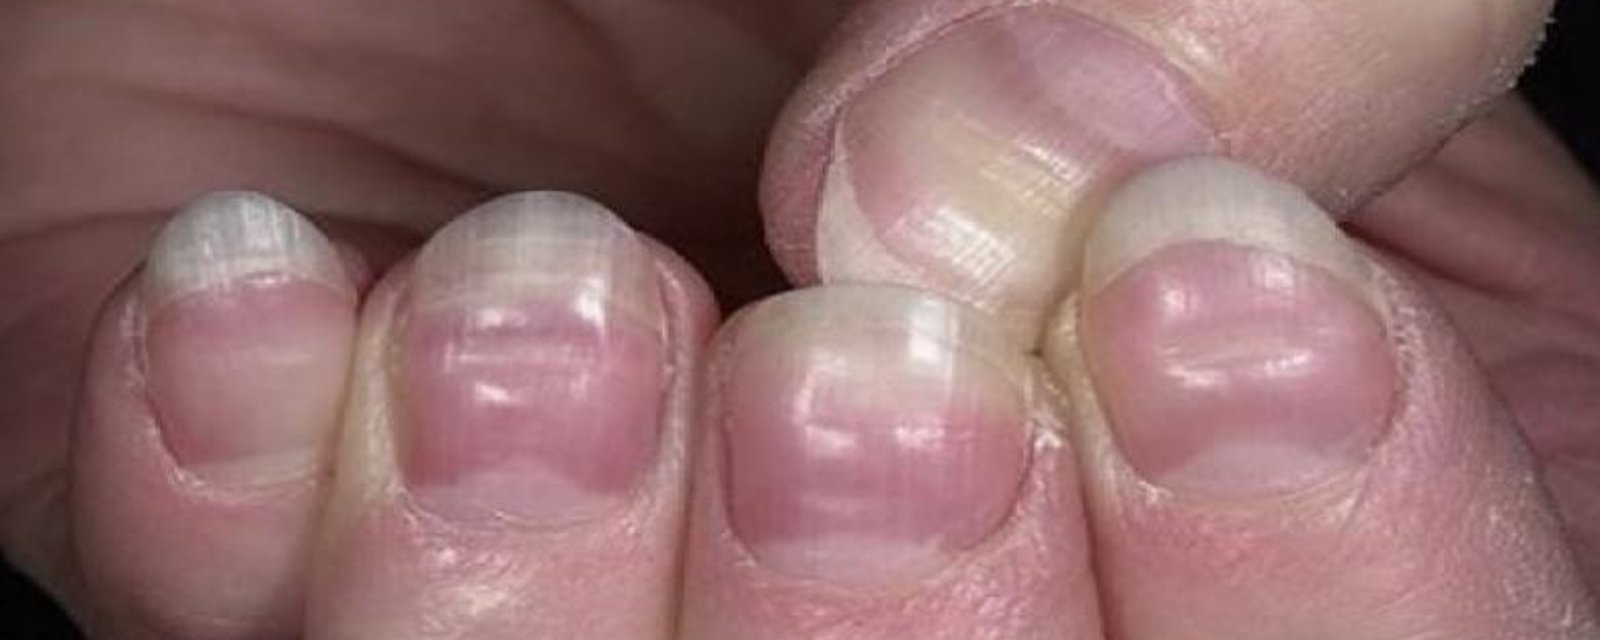 Vos ongles sont très révélateurs de votre état de santé : 15 signes à ne pas prendre à la légère